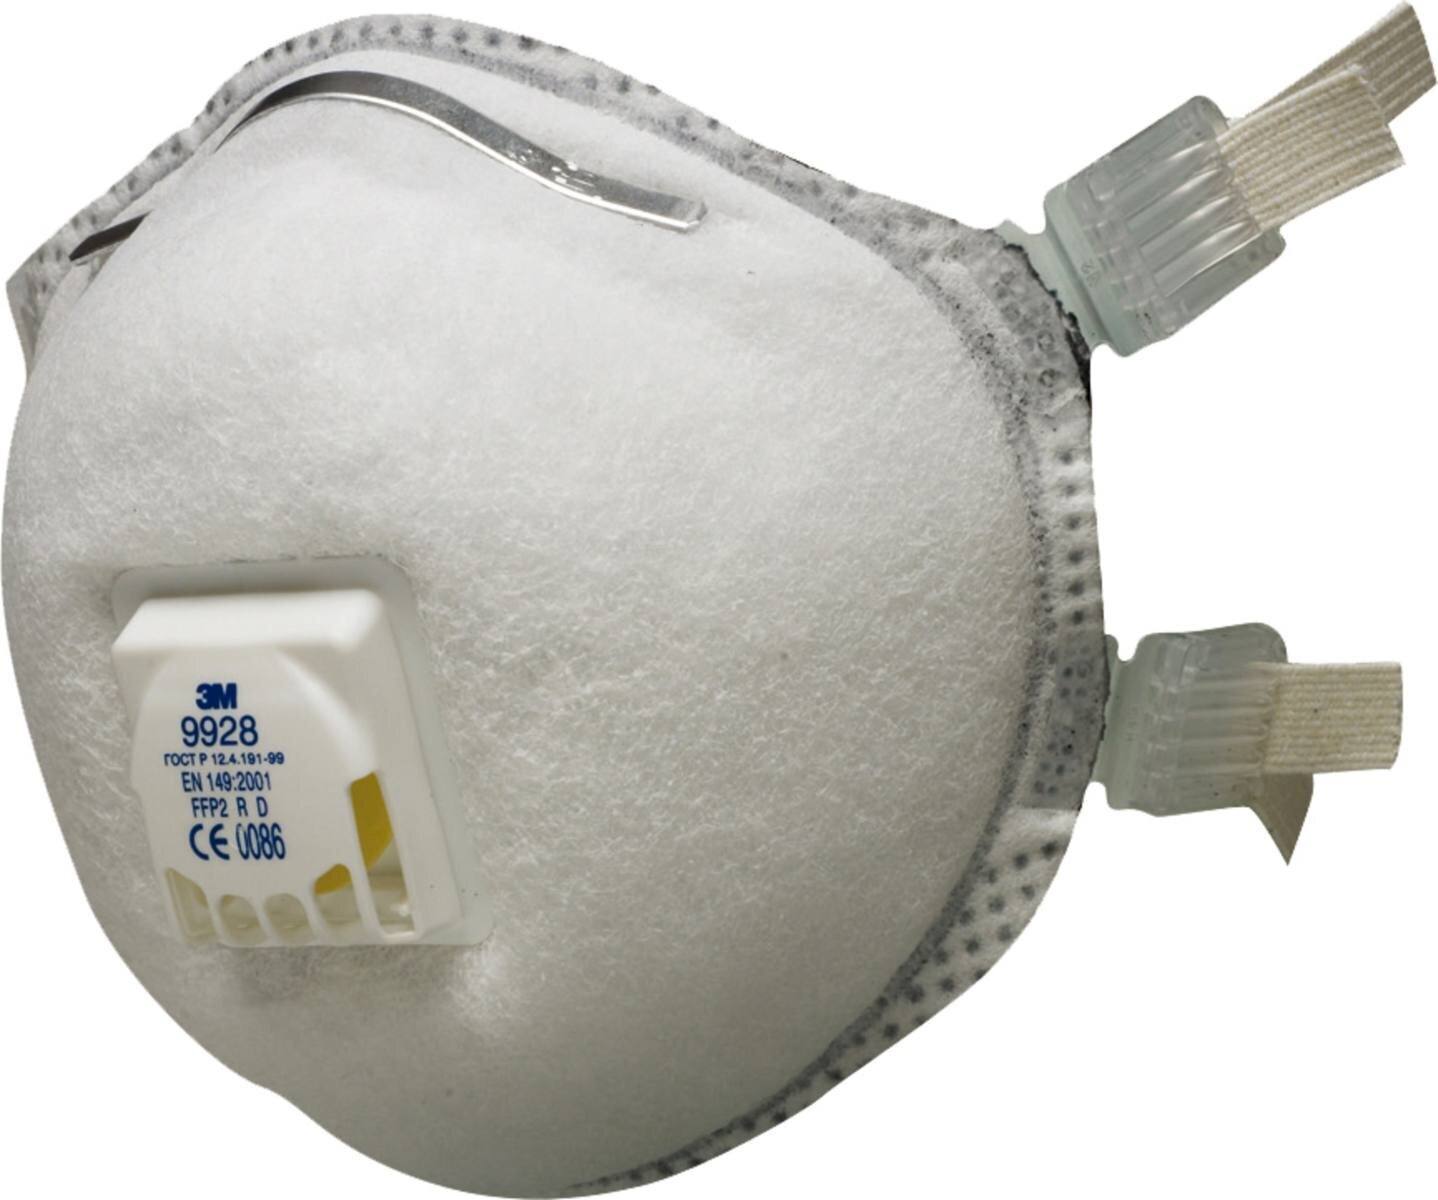 Máscara de soldadura 3M 9928 FFP2 R D con válvula de exhalación de flujo frío contra partículas hasta 10 veces el valor límite y contra ozono. Ideal para soldar.